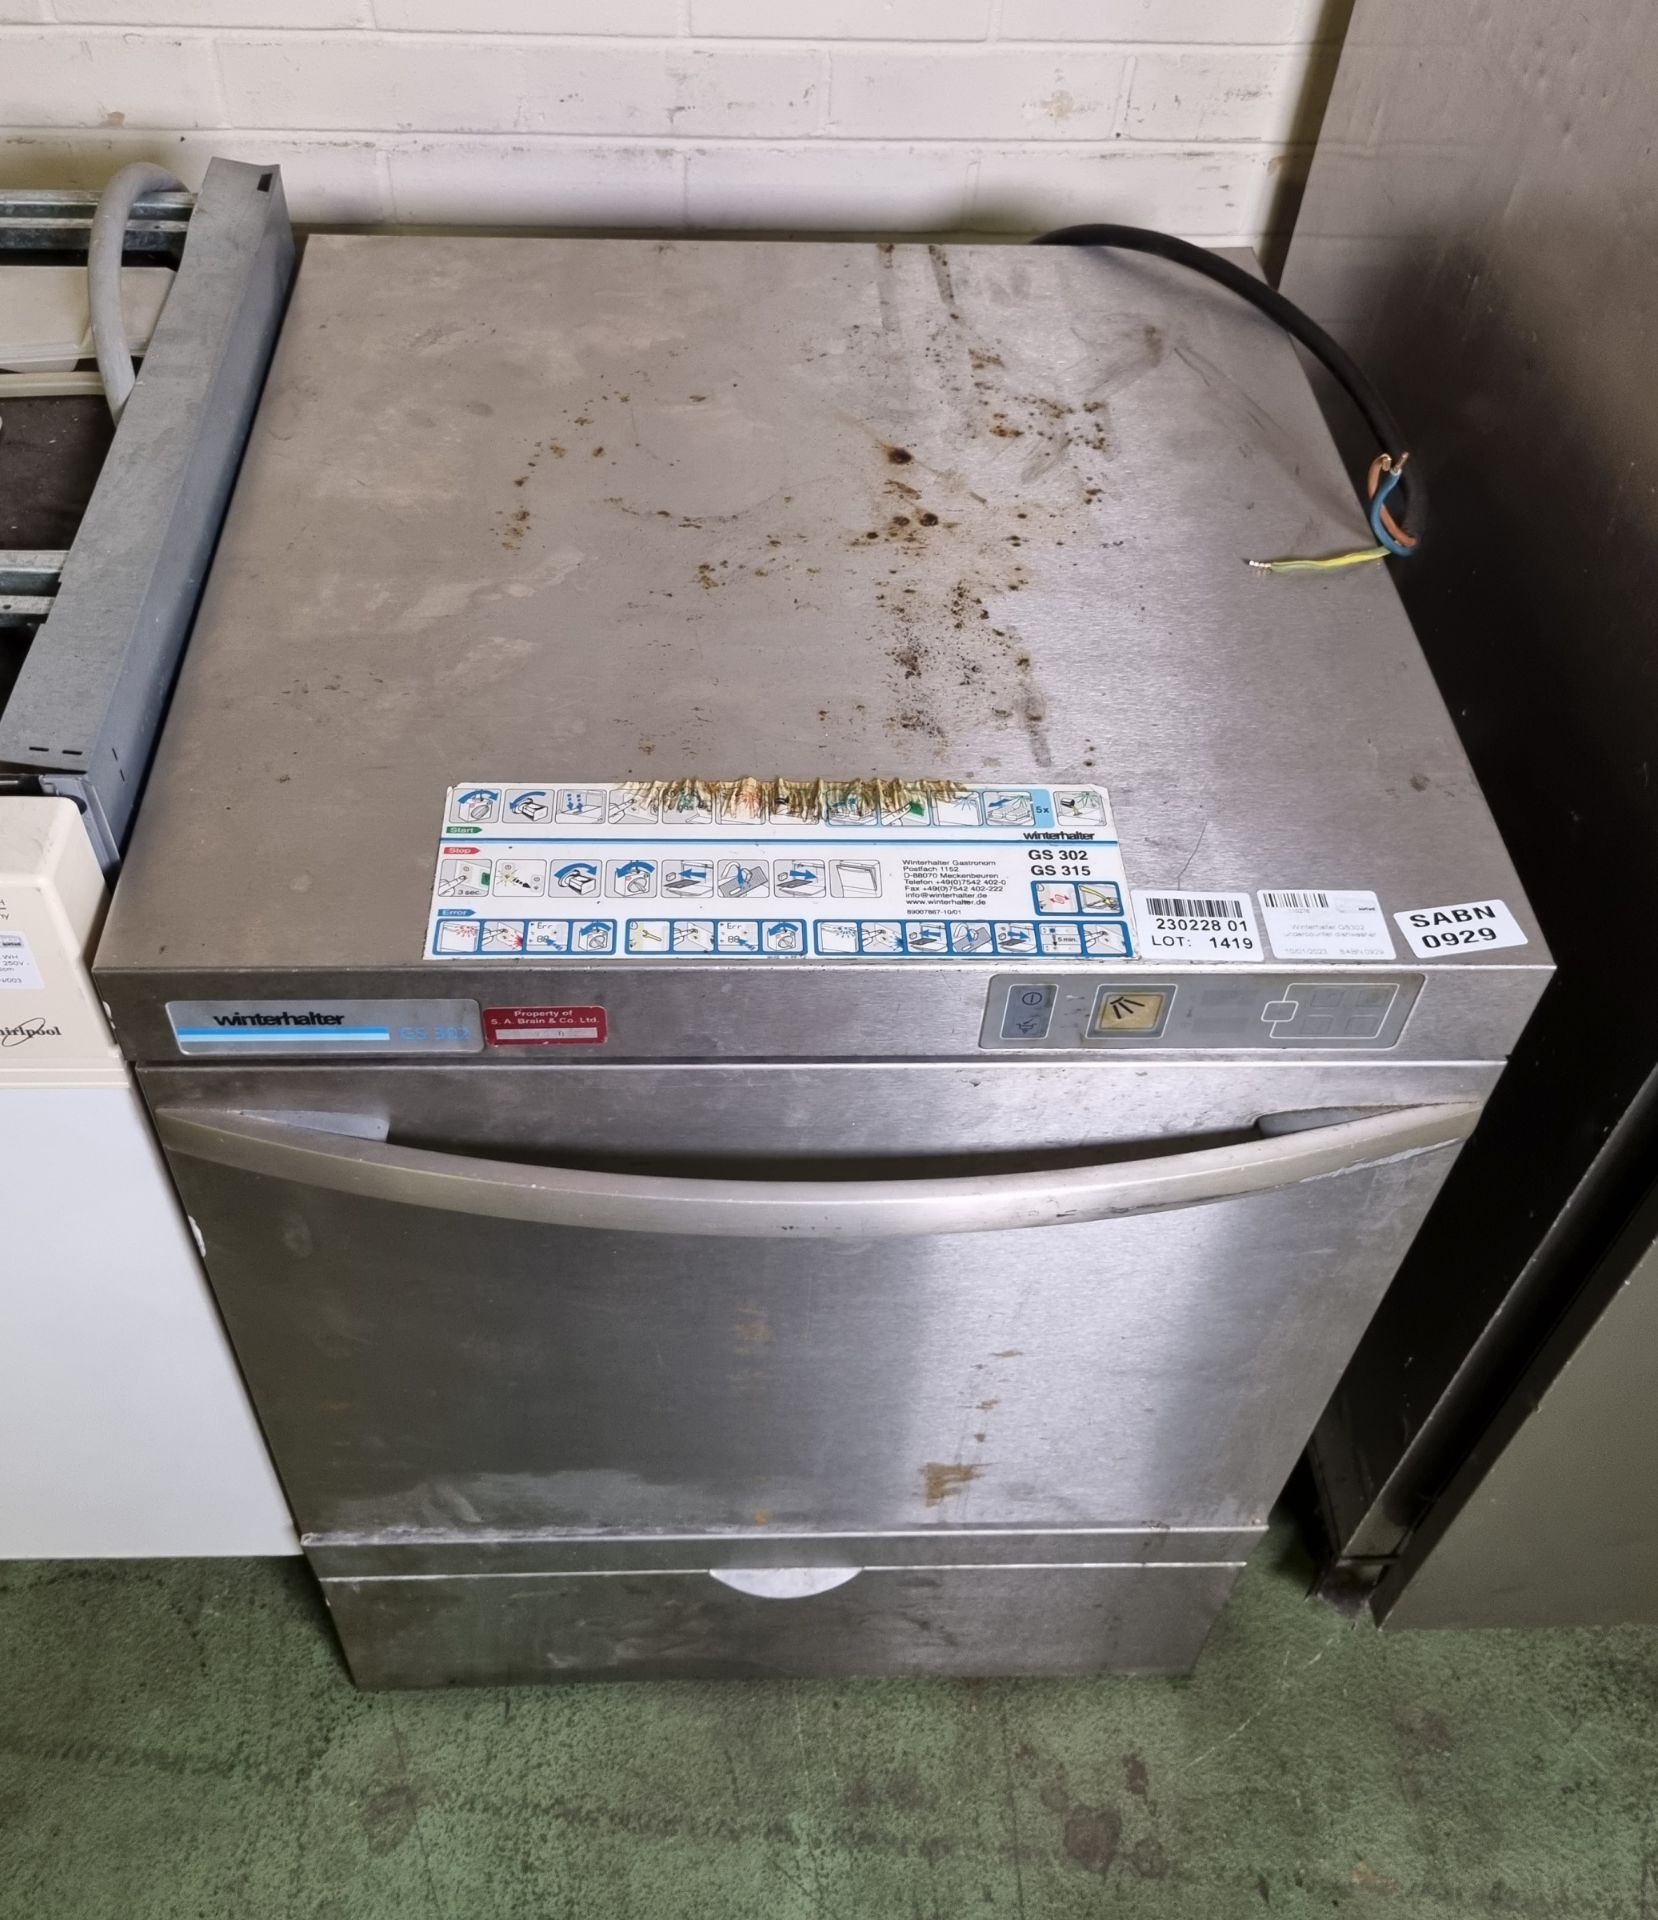 Winterhalter GS302 undercounter dishwasher - Bild 2 aus 4